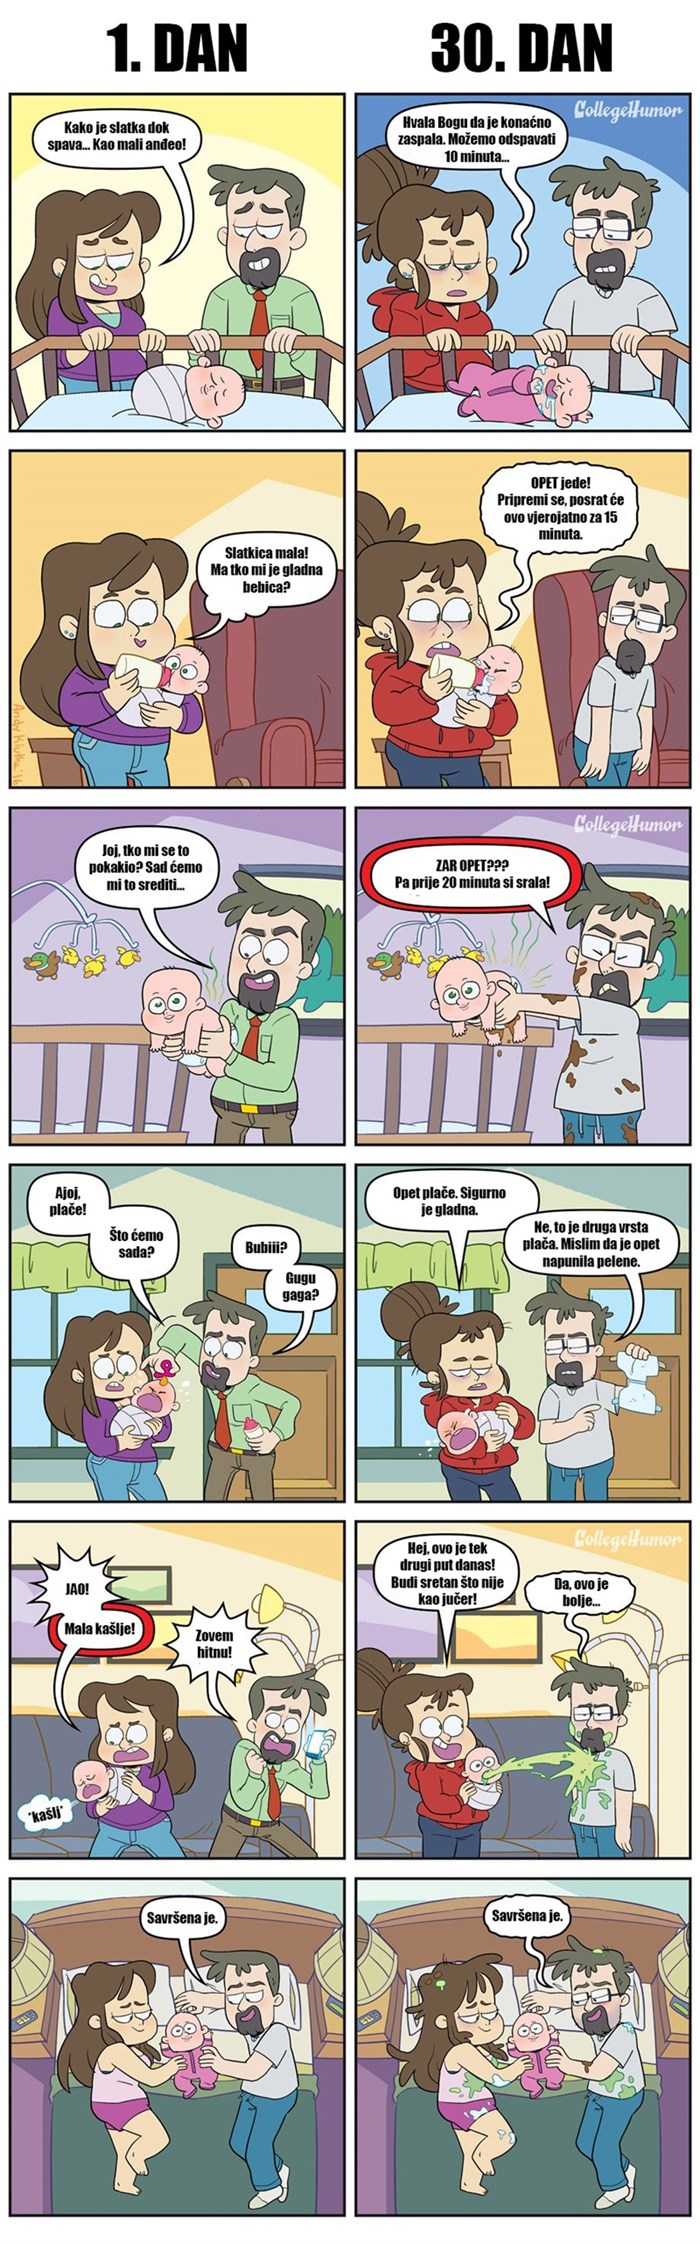 Prvi dani s bebom: Ovaj strip pokazuje koliko je teško biti roditelji 